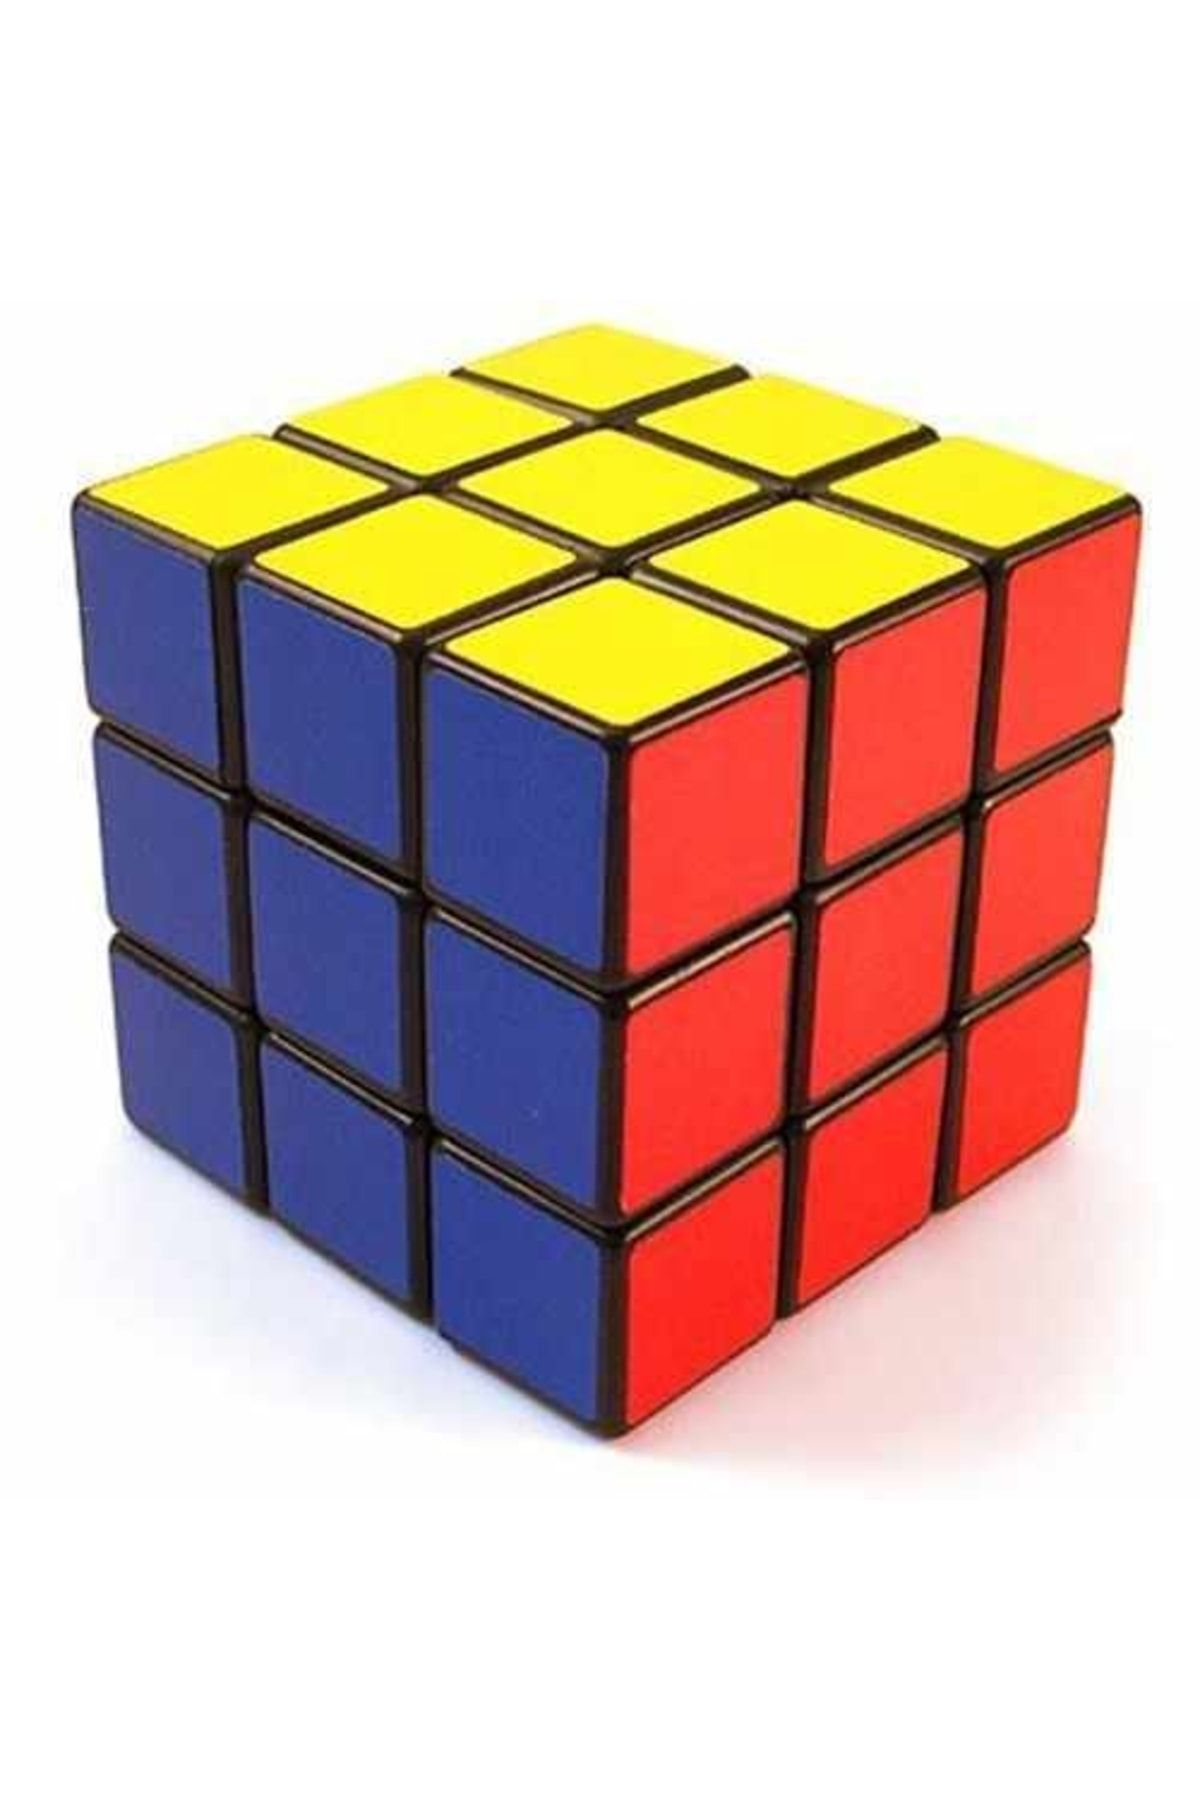 MCM GROUP Zeka Küpü Sihirli Rubik